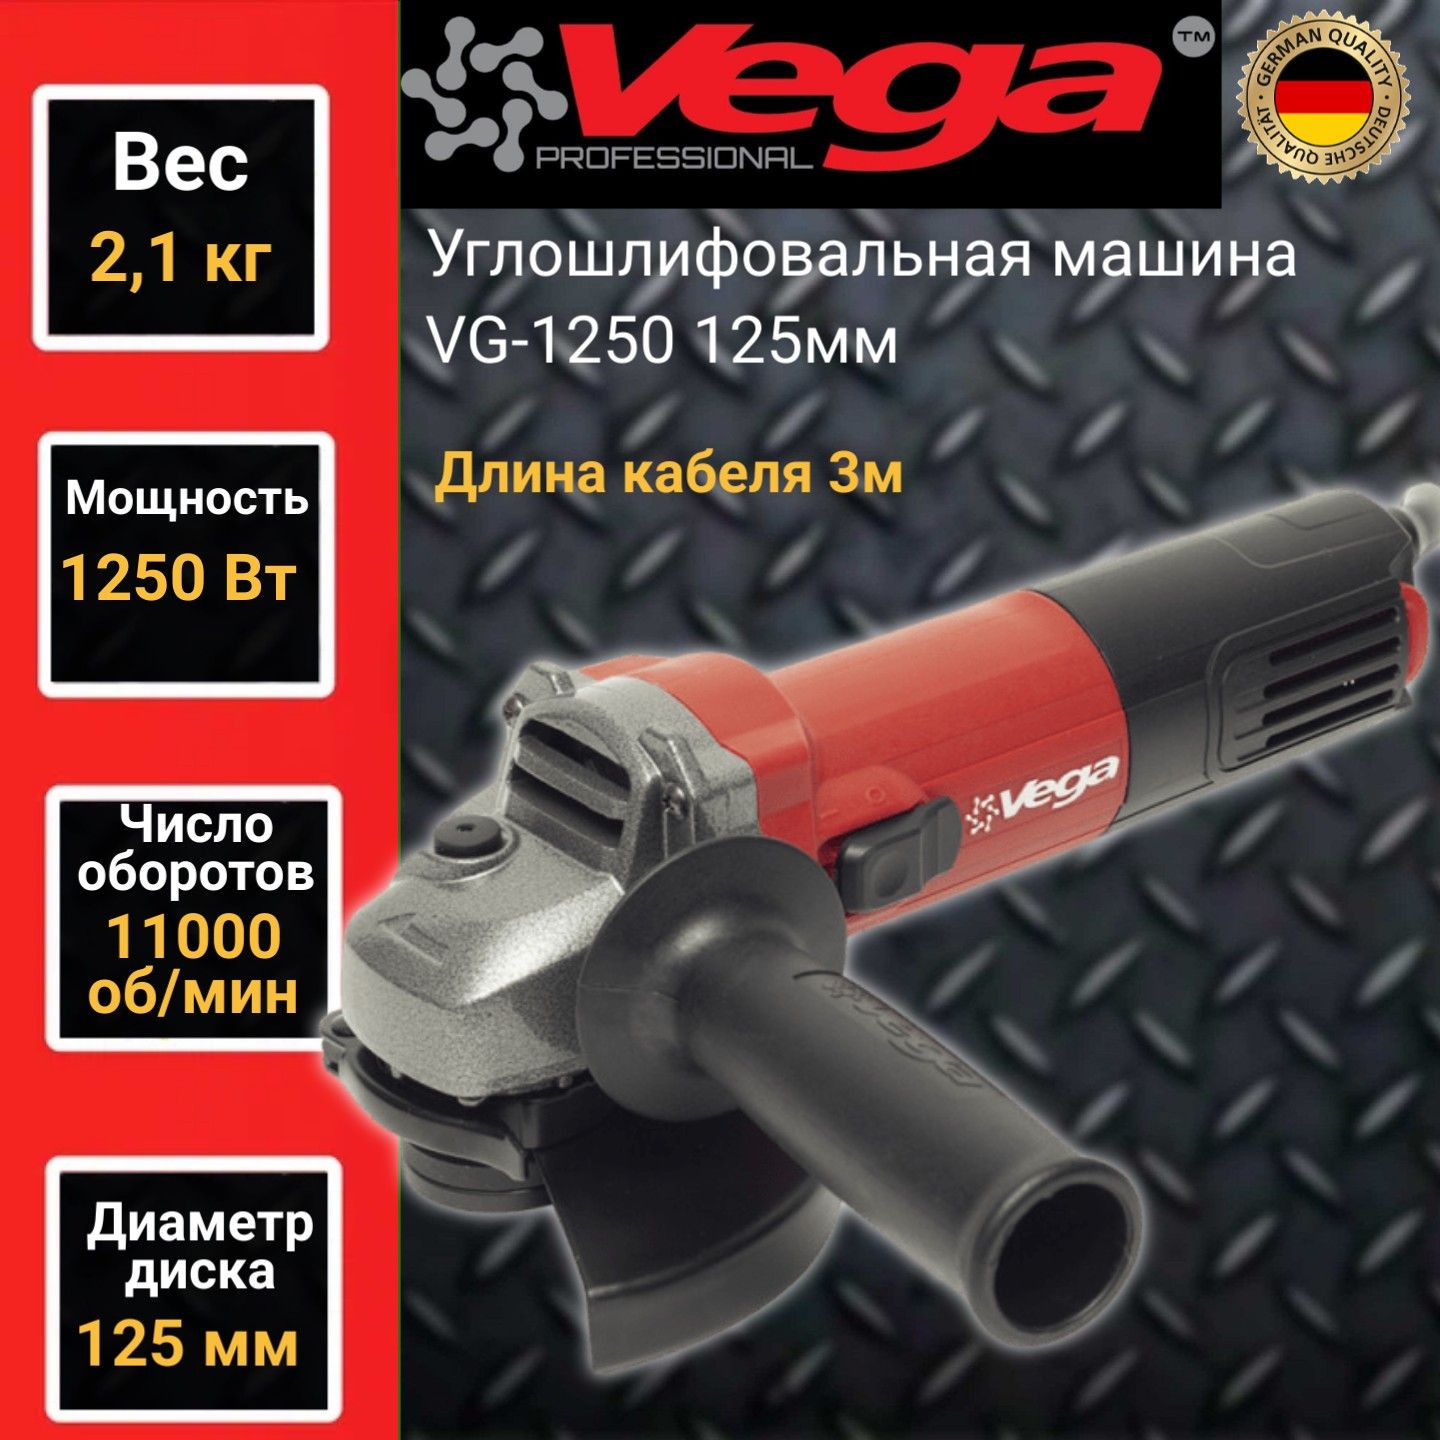 Углошлифовальная машина болгарка Vega Professional VG 1250, 125мм круг,1250Вт,11000об/мин машина углошлифовальная 750 вт 115 125мм kinpow